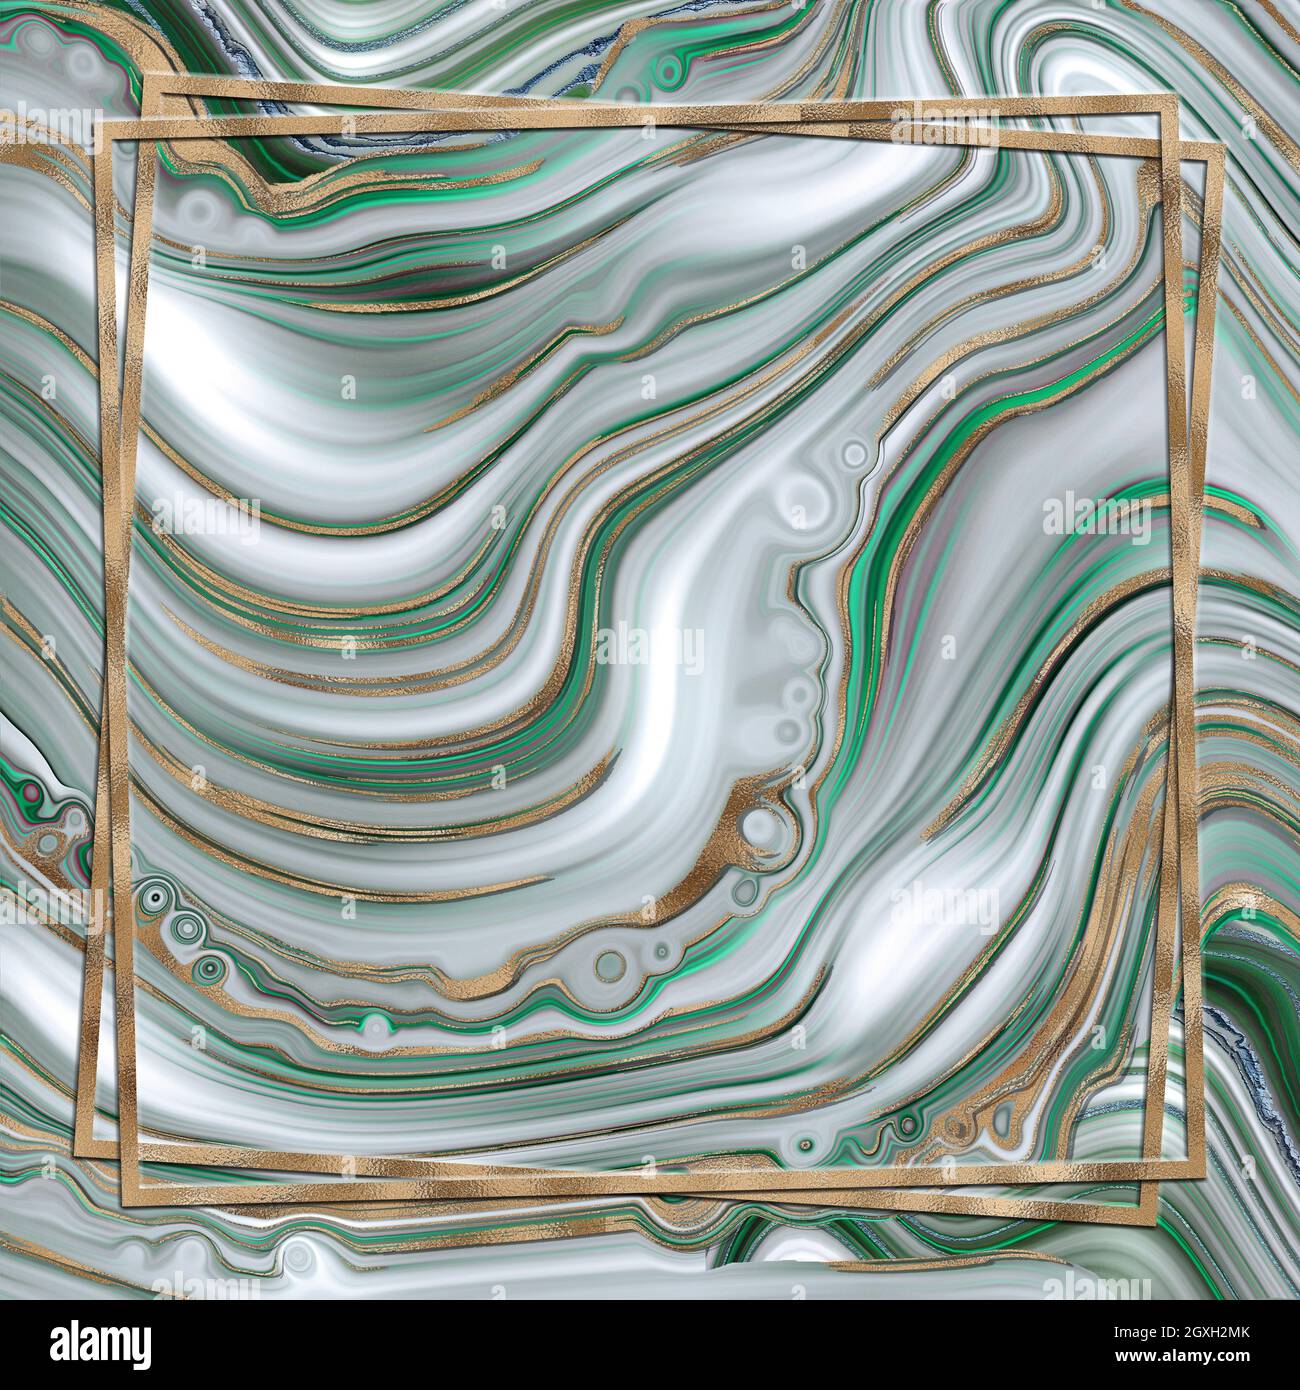 Abstrakte trendige grüne Hintergrund Vorlage. Flüssiges, abstraktes Achat-Design aus Marmor mit goldfarbener Wellenstruktur. Goldrahmen.Cover, Einladung, Banner, Plakat, Stockfoto